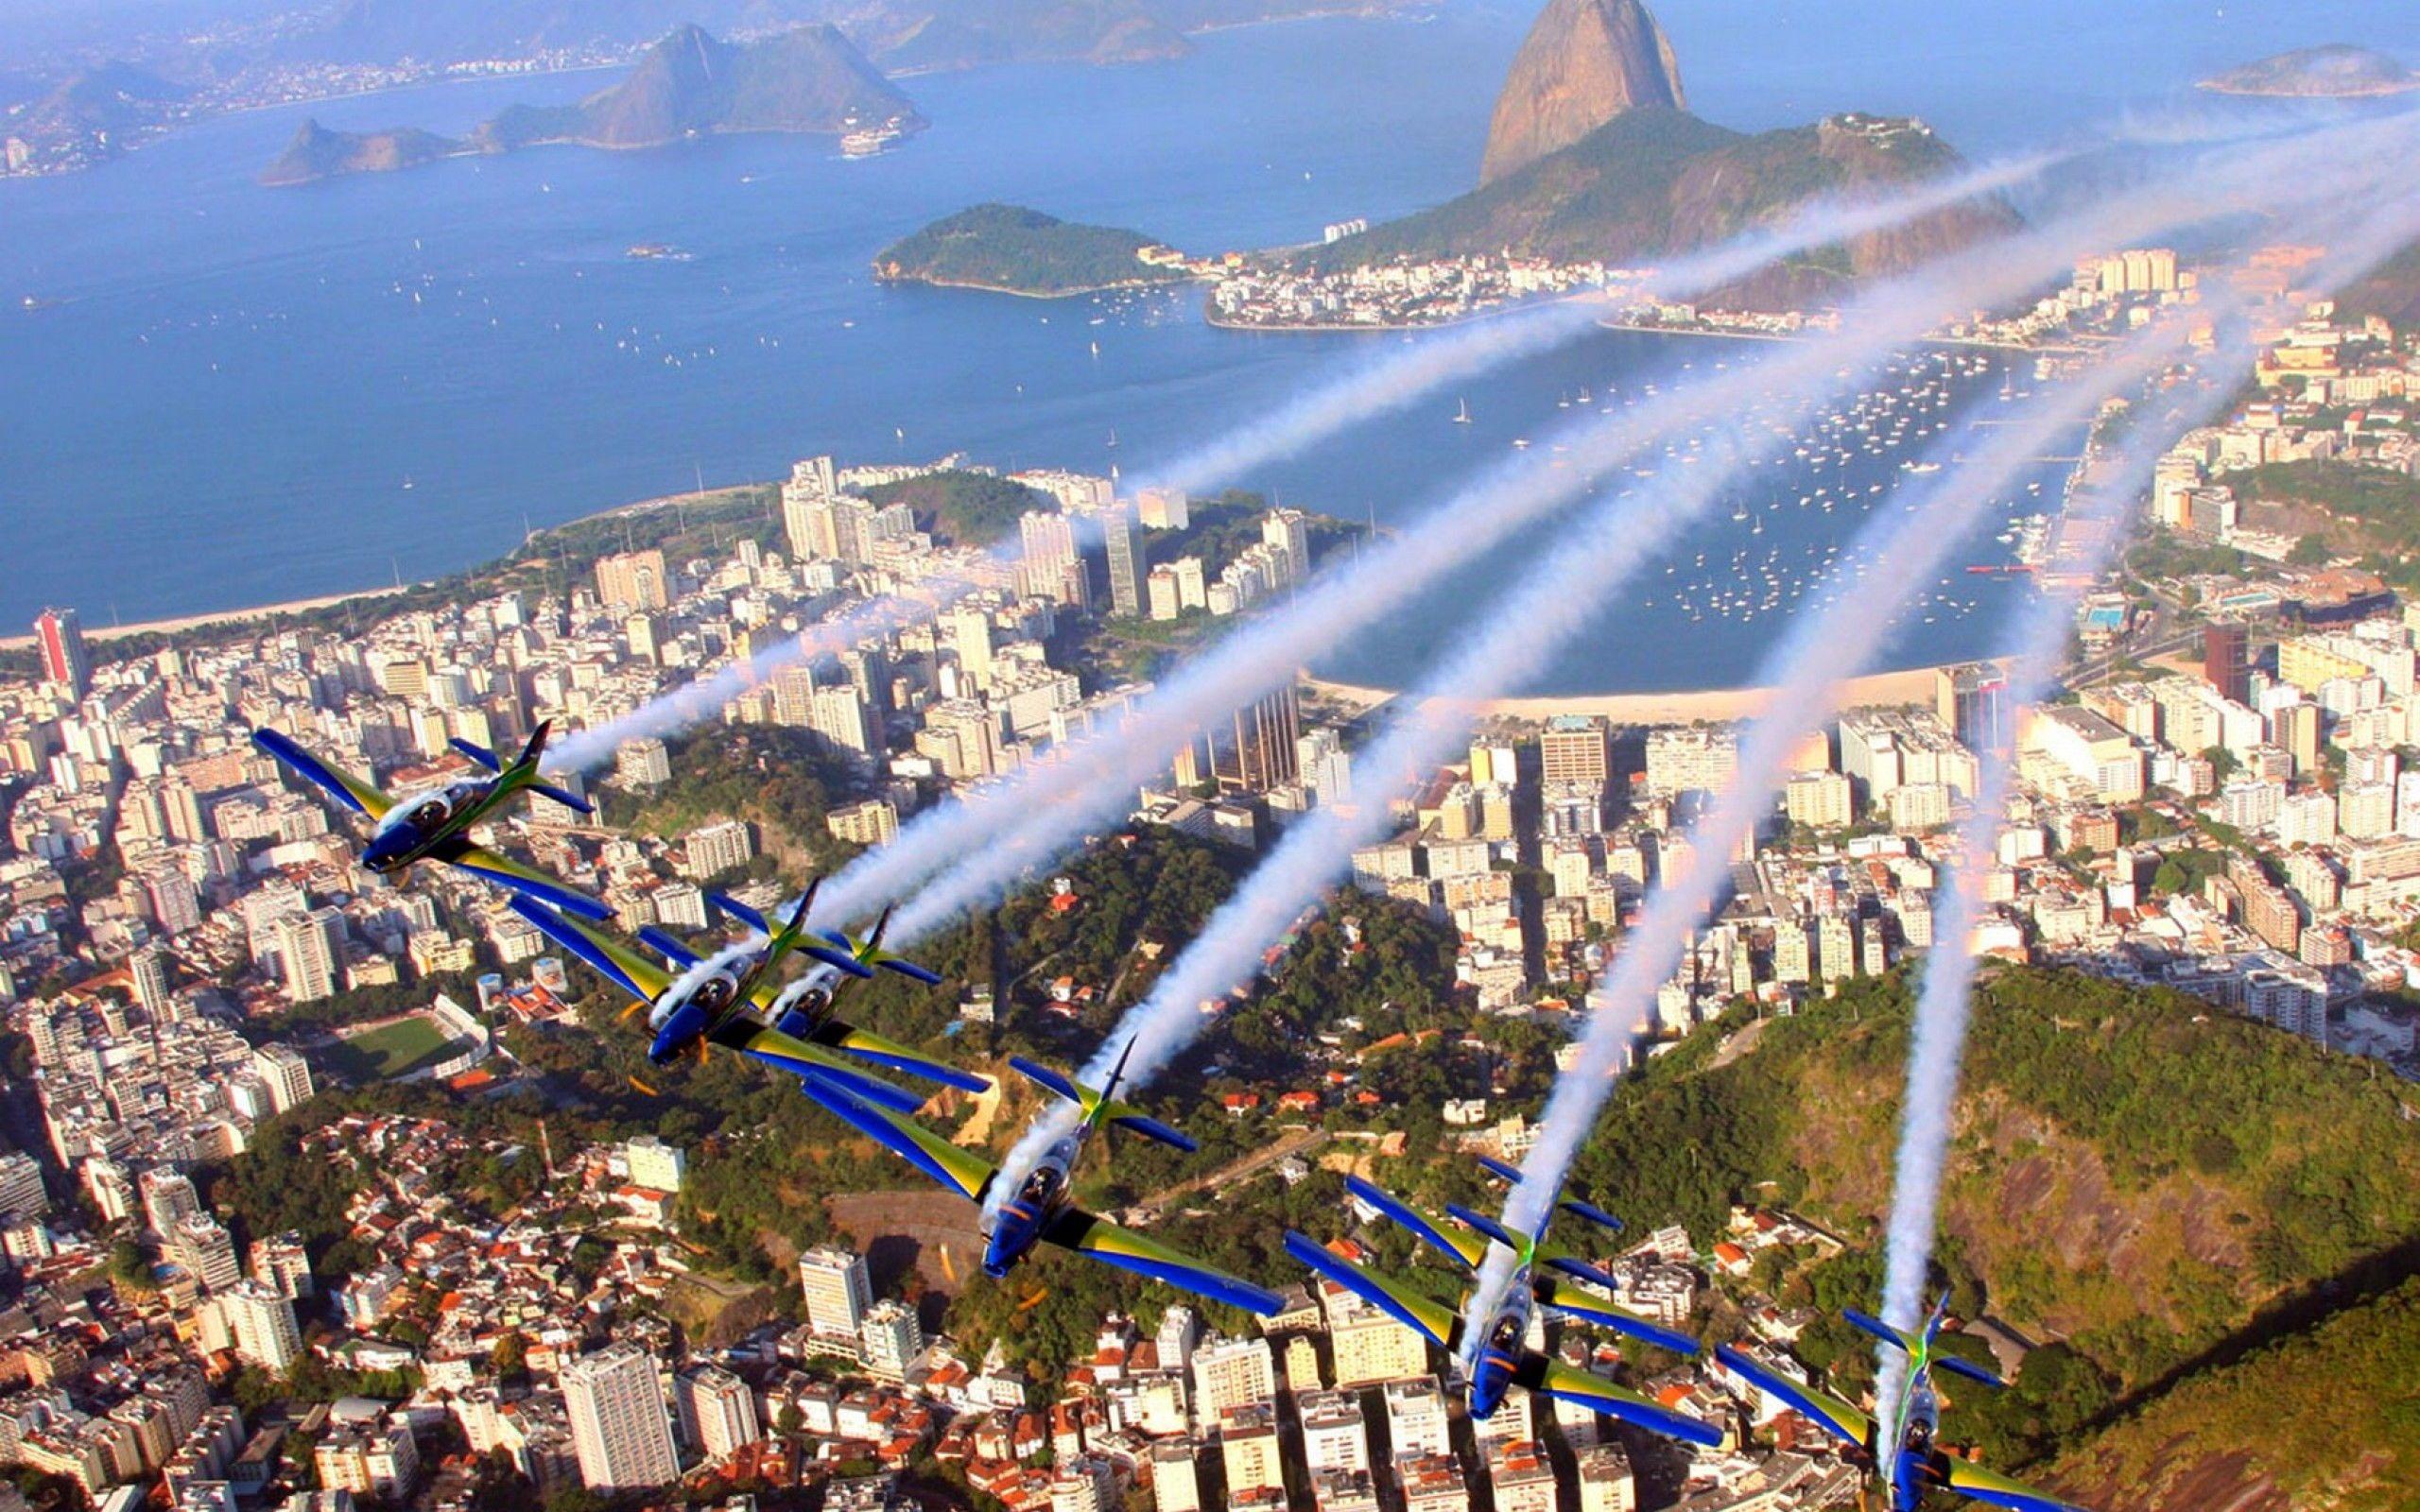 Brazil PR: Top Brazilian Public Relations Agency's